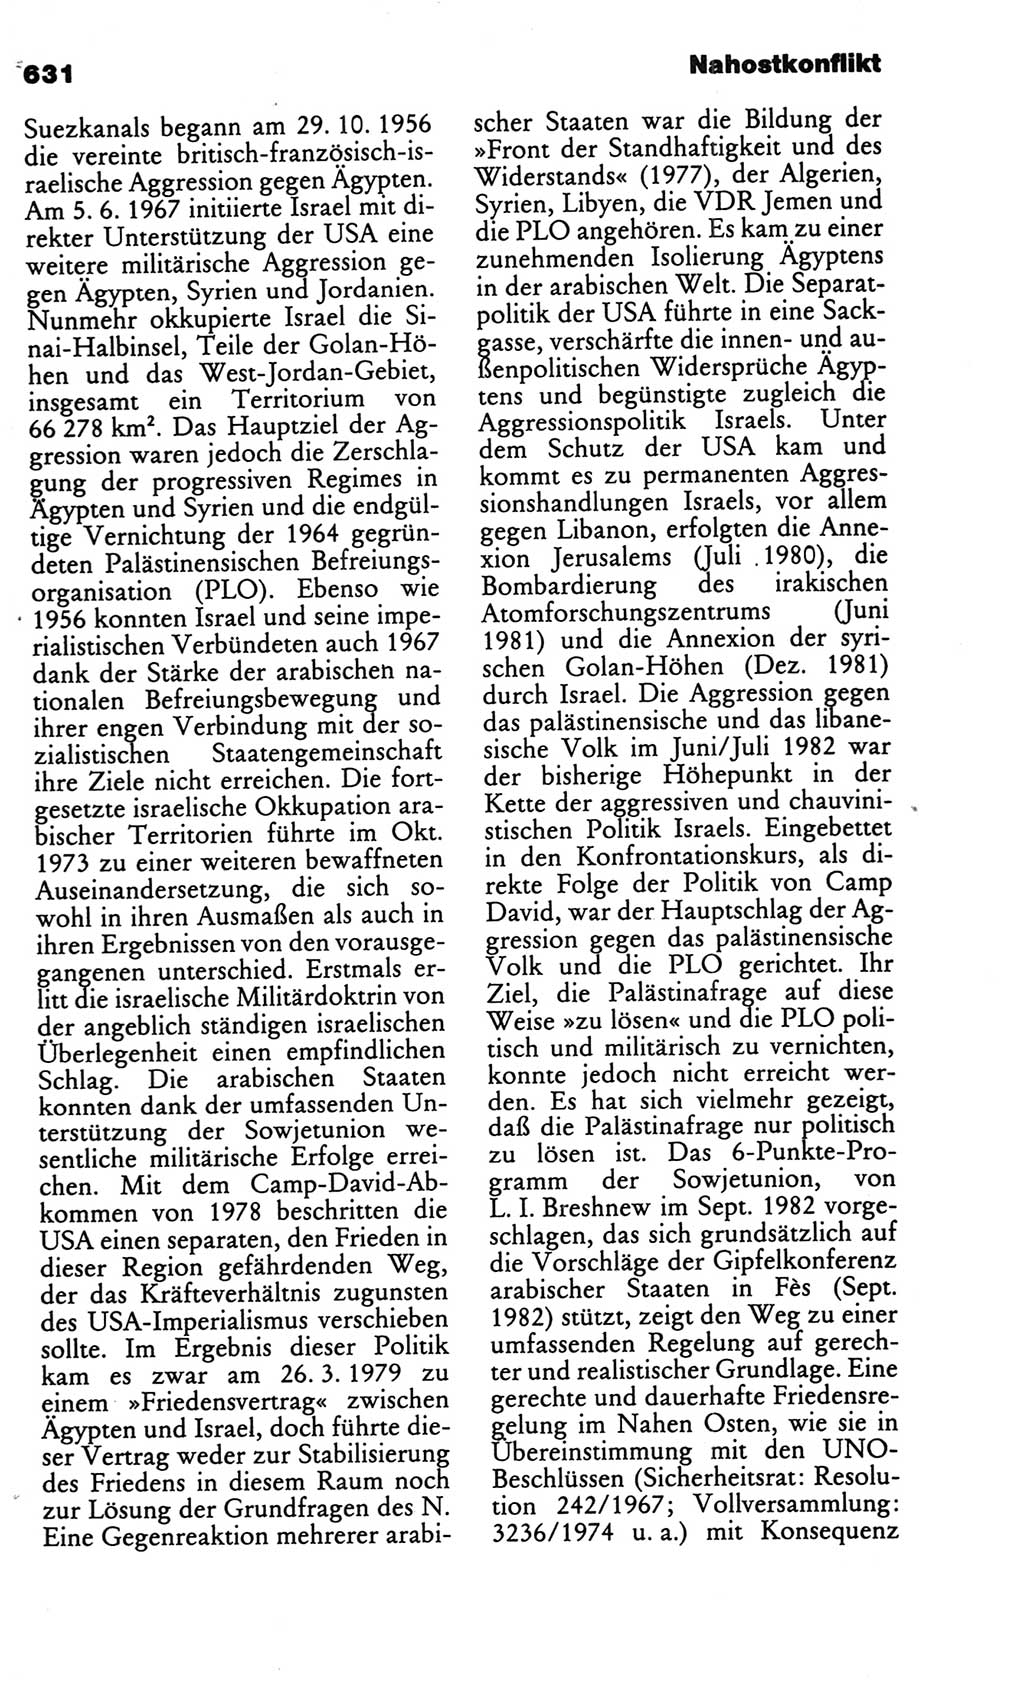 Kleines politisches Wörterbuch [Deutsche Demokratische Republik (DDR)] 1986, Seite 631 (Kl. pol. Wb. DDR 1986, S. 631)